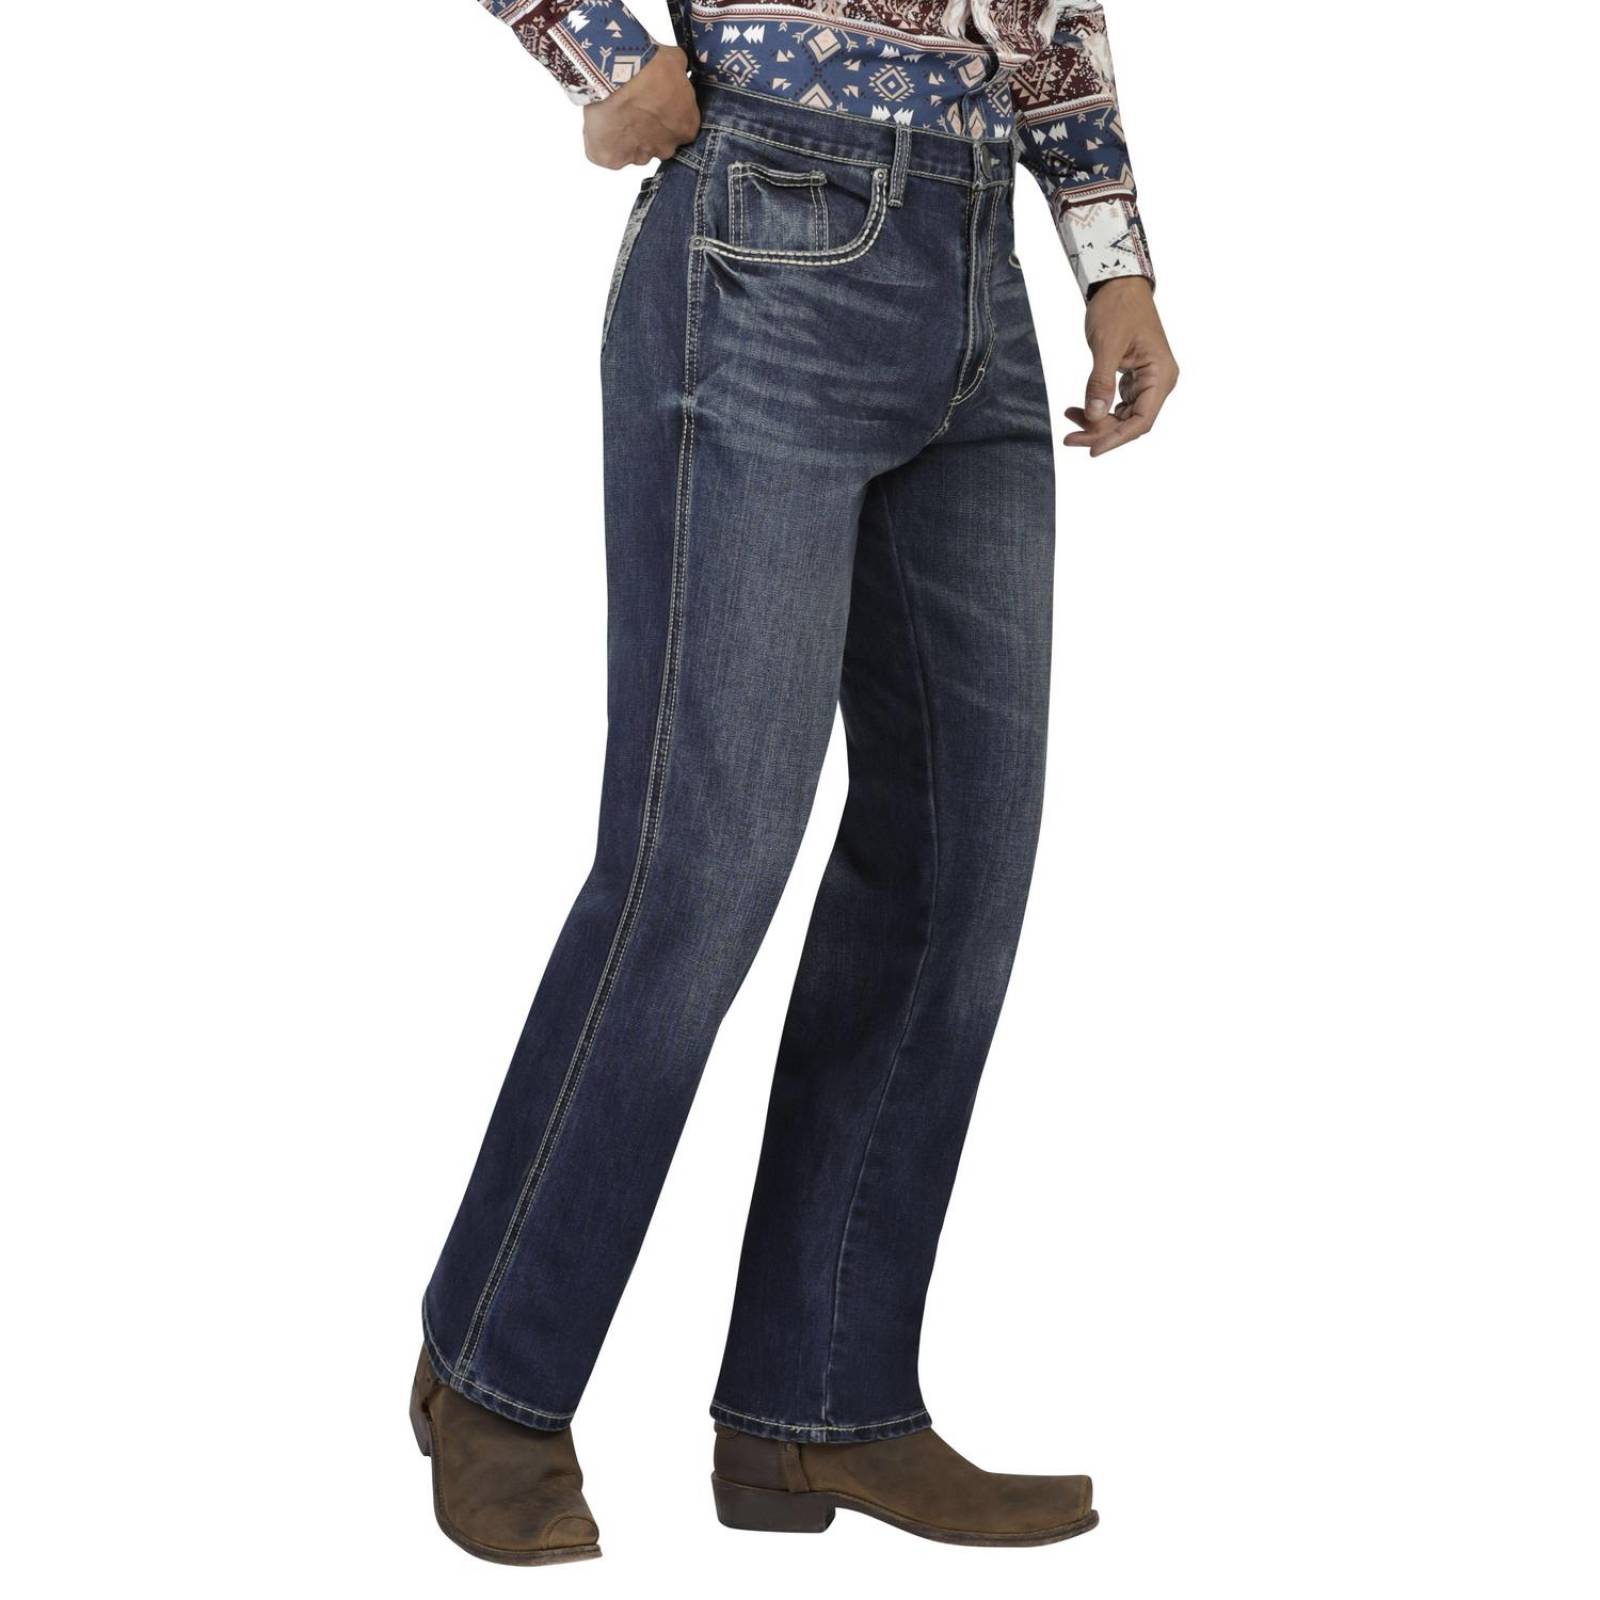 Pantalón Jeans 20x Wrangler Hombre 387